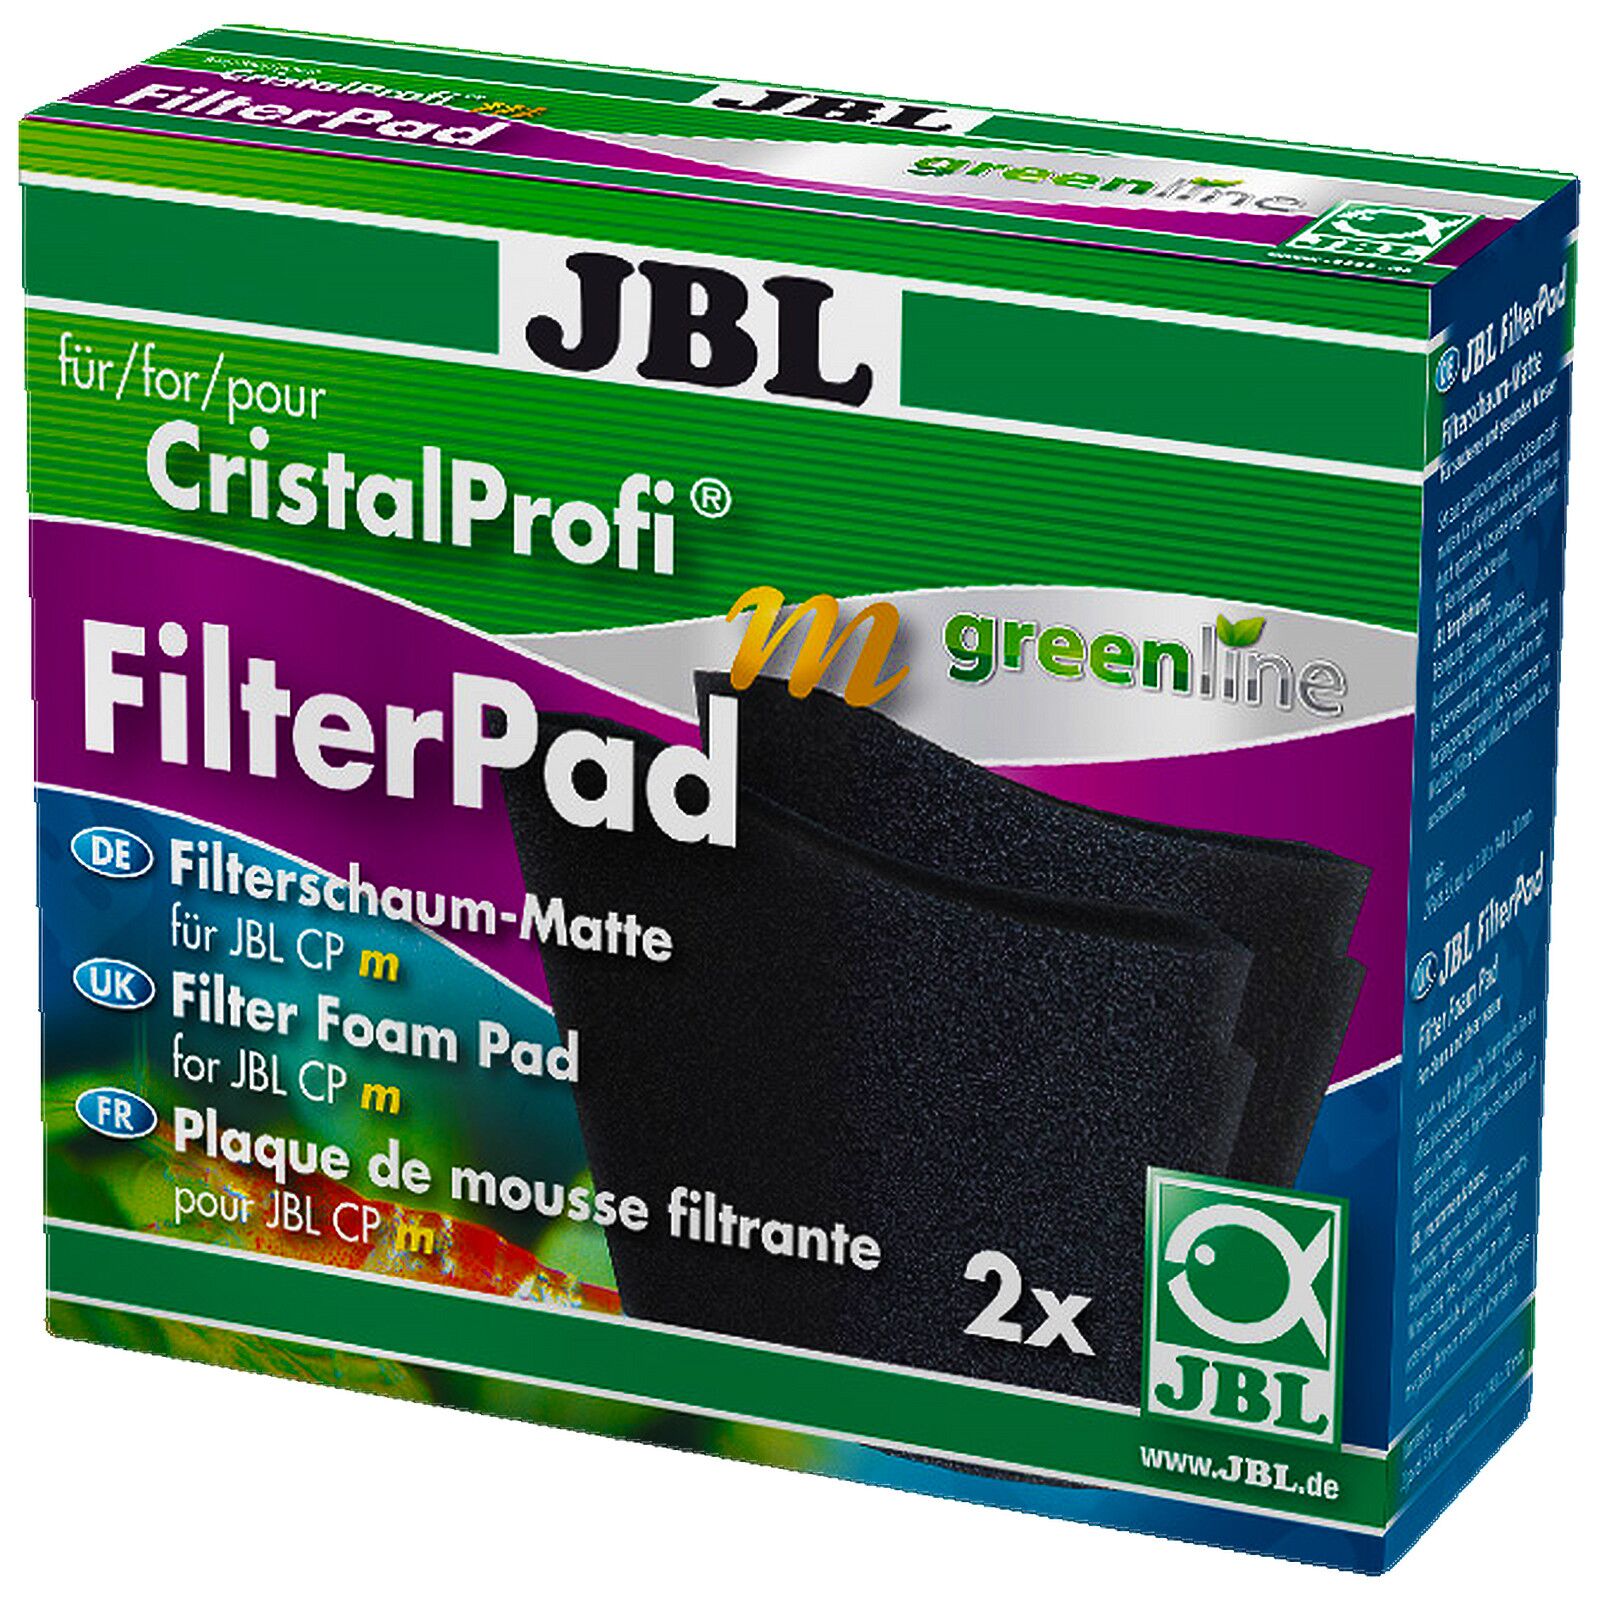 JBL - CristalProfi - m greenline - FilterPad